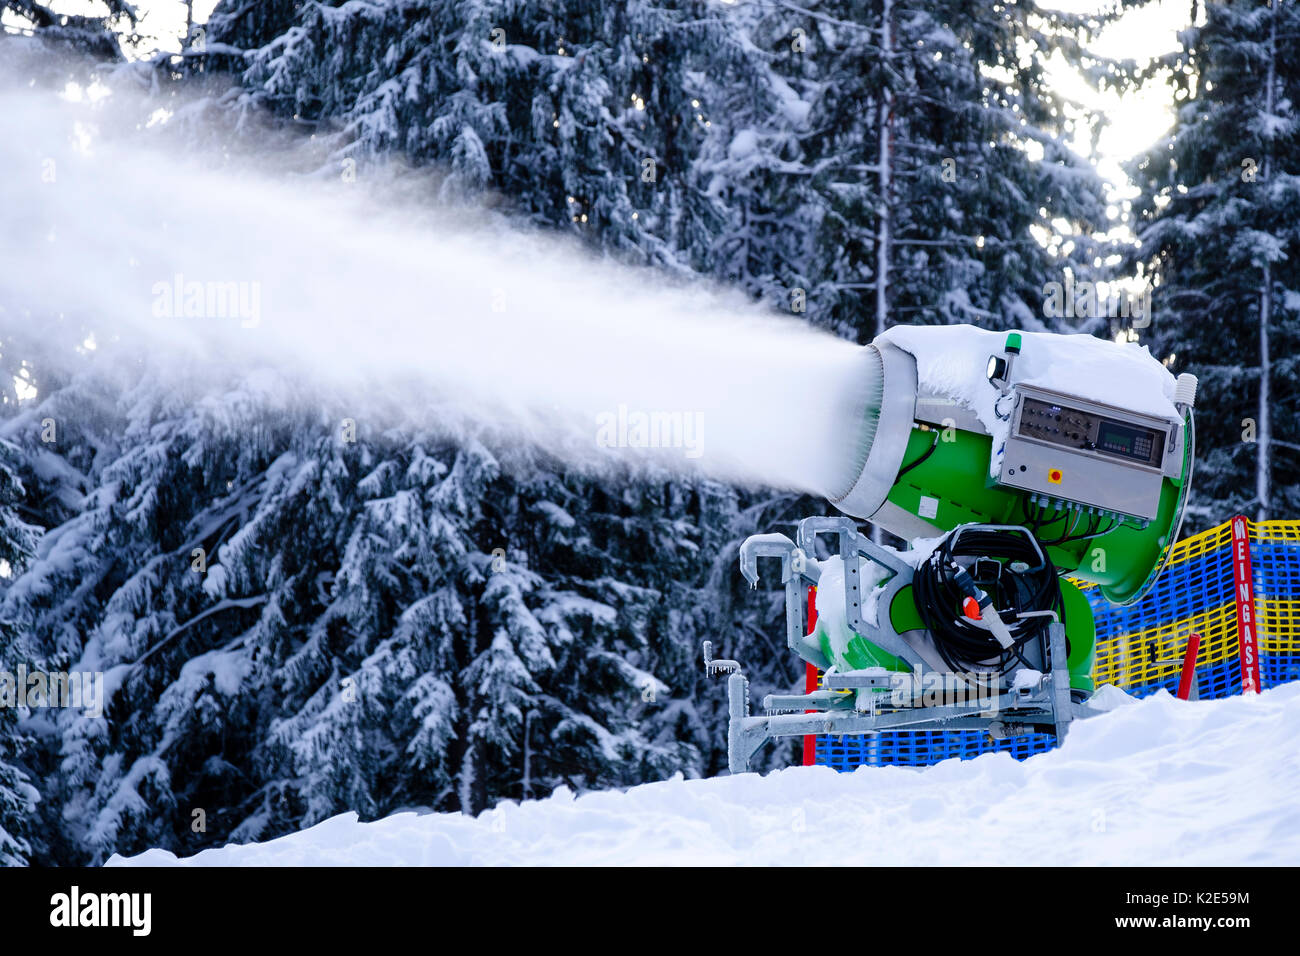 Snow cannon in operation, ski resort Götschen, Bischofswiesen, Bavaria, Germany Stock Photo